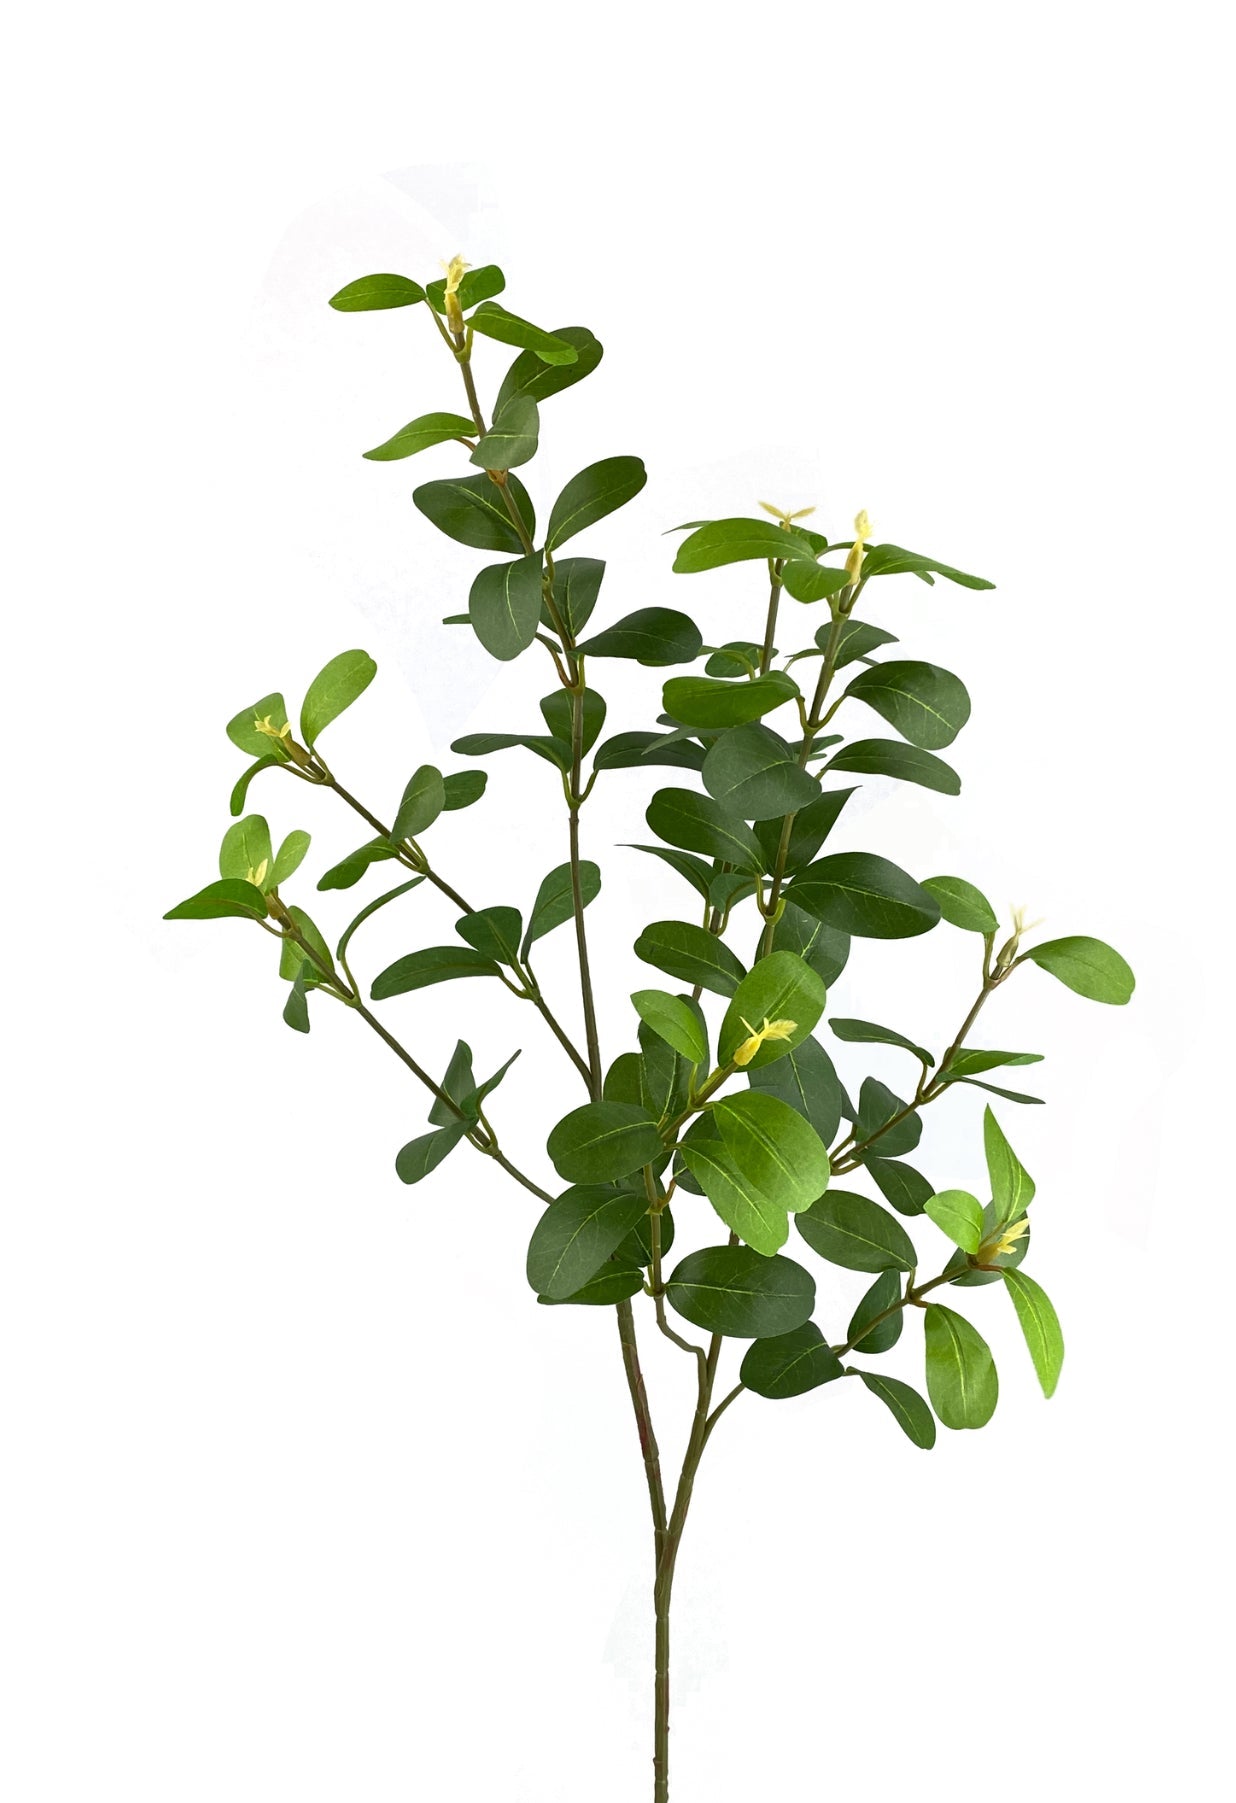 Syngonium leaf spray - Greenery MarketArtificial Flora13598GN